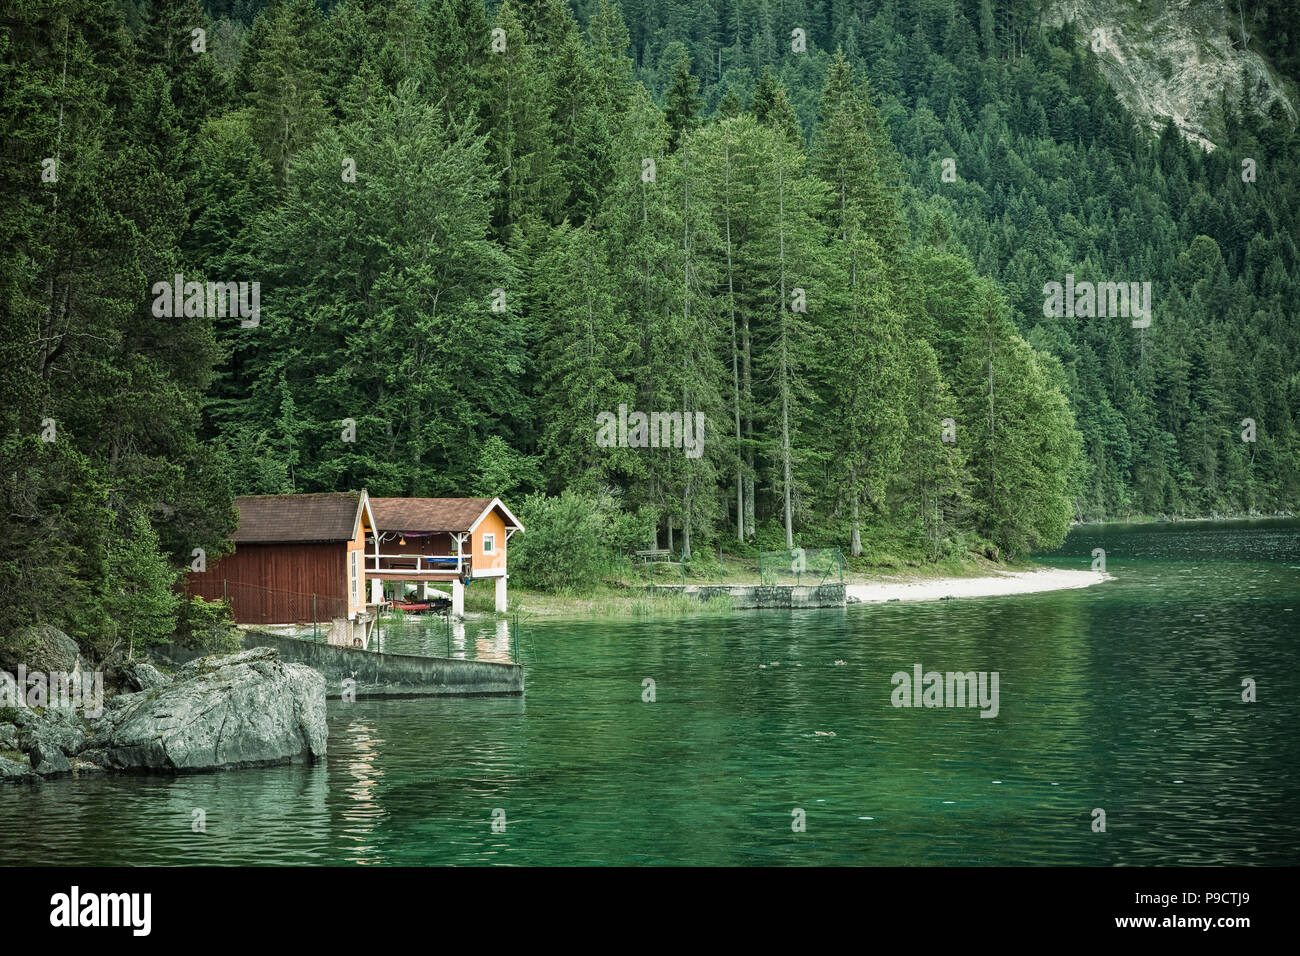 Kleines Bootshaus am See am Ufer des Eibsees in den Bayerischen Alpen, Bayern, Deutschland Stockfoto